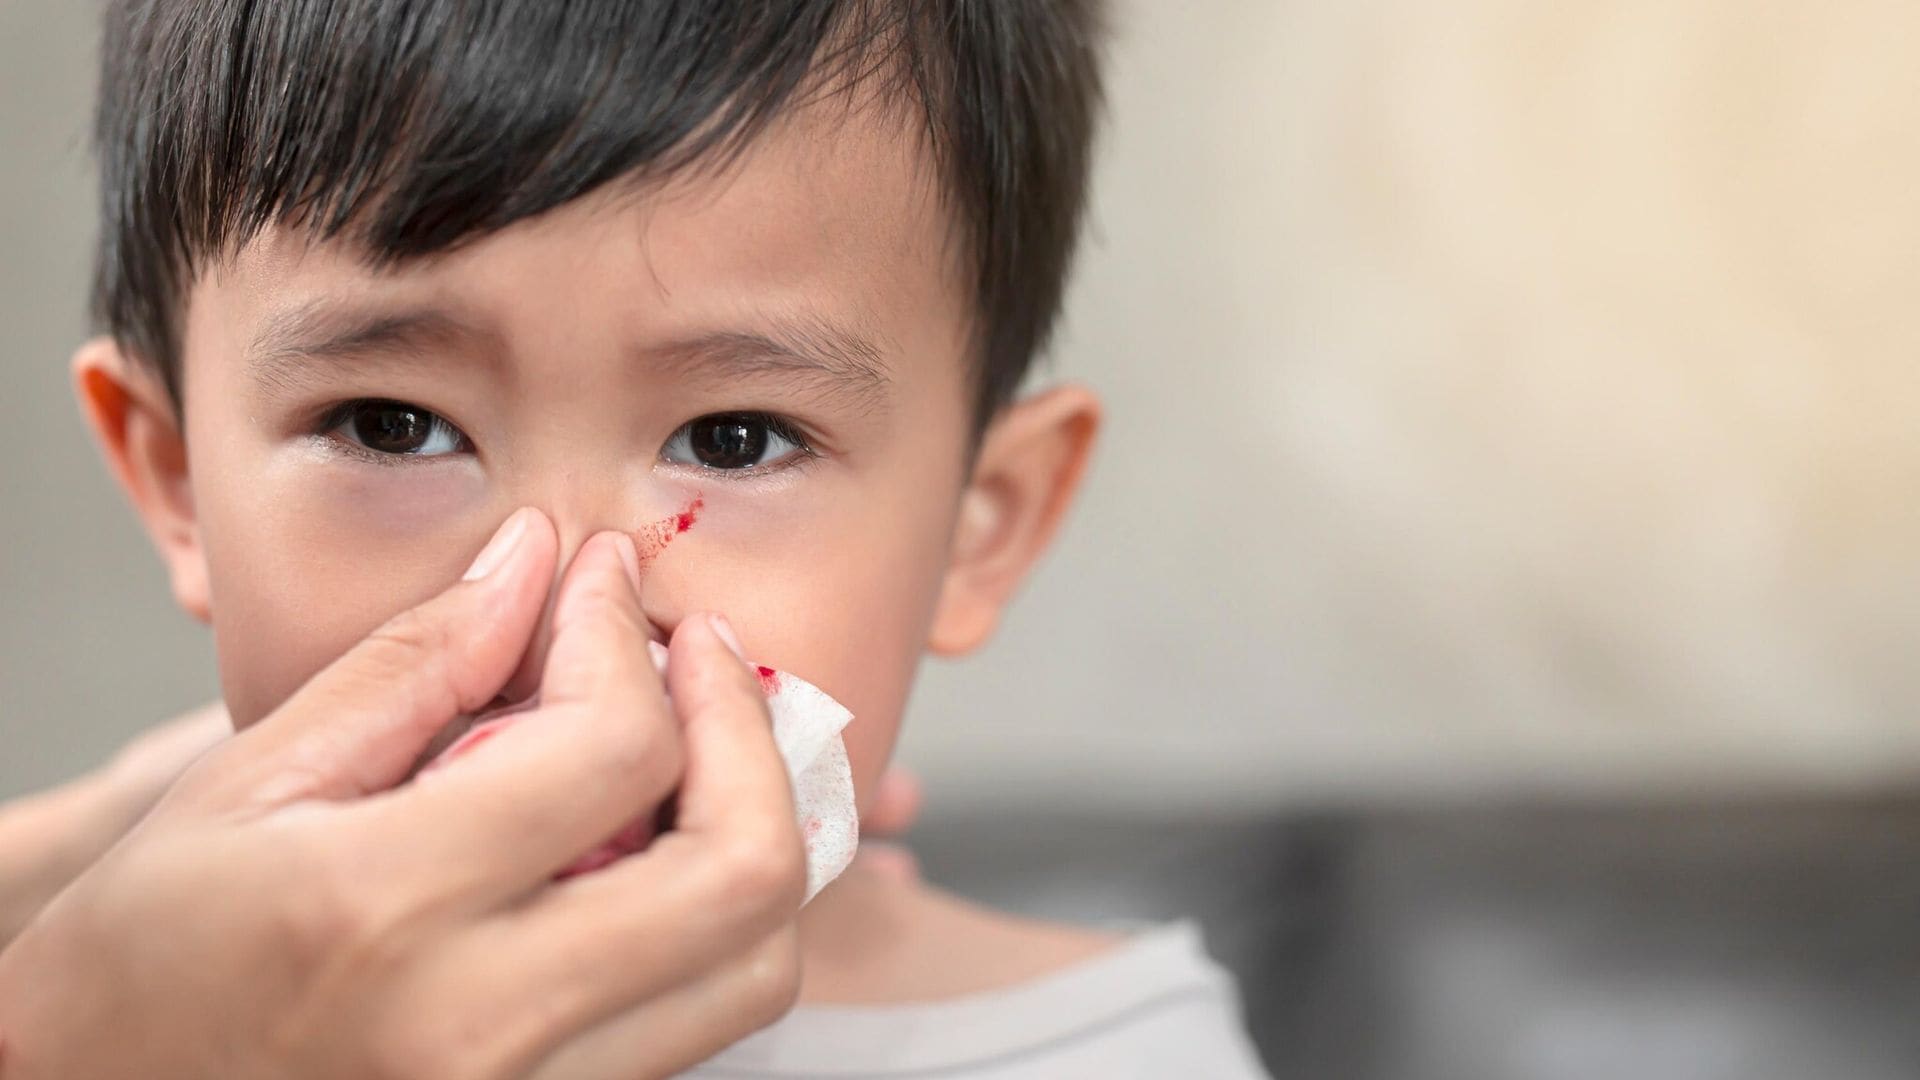 ‘¿Qué hago si mi hijo se ha metido un objeto en la nariz?’